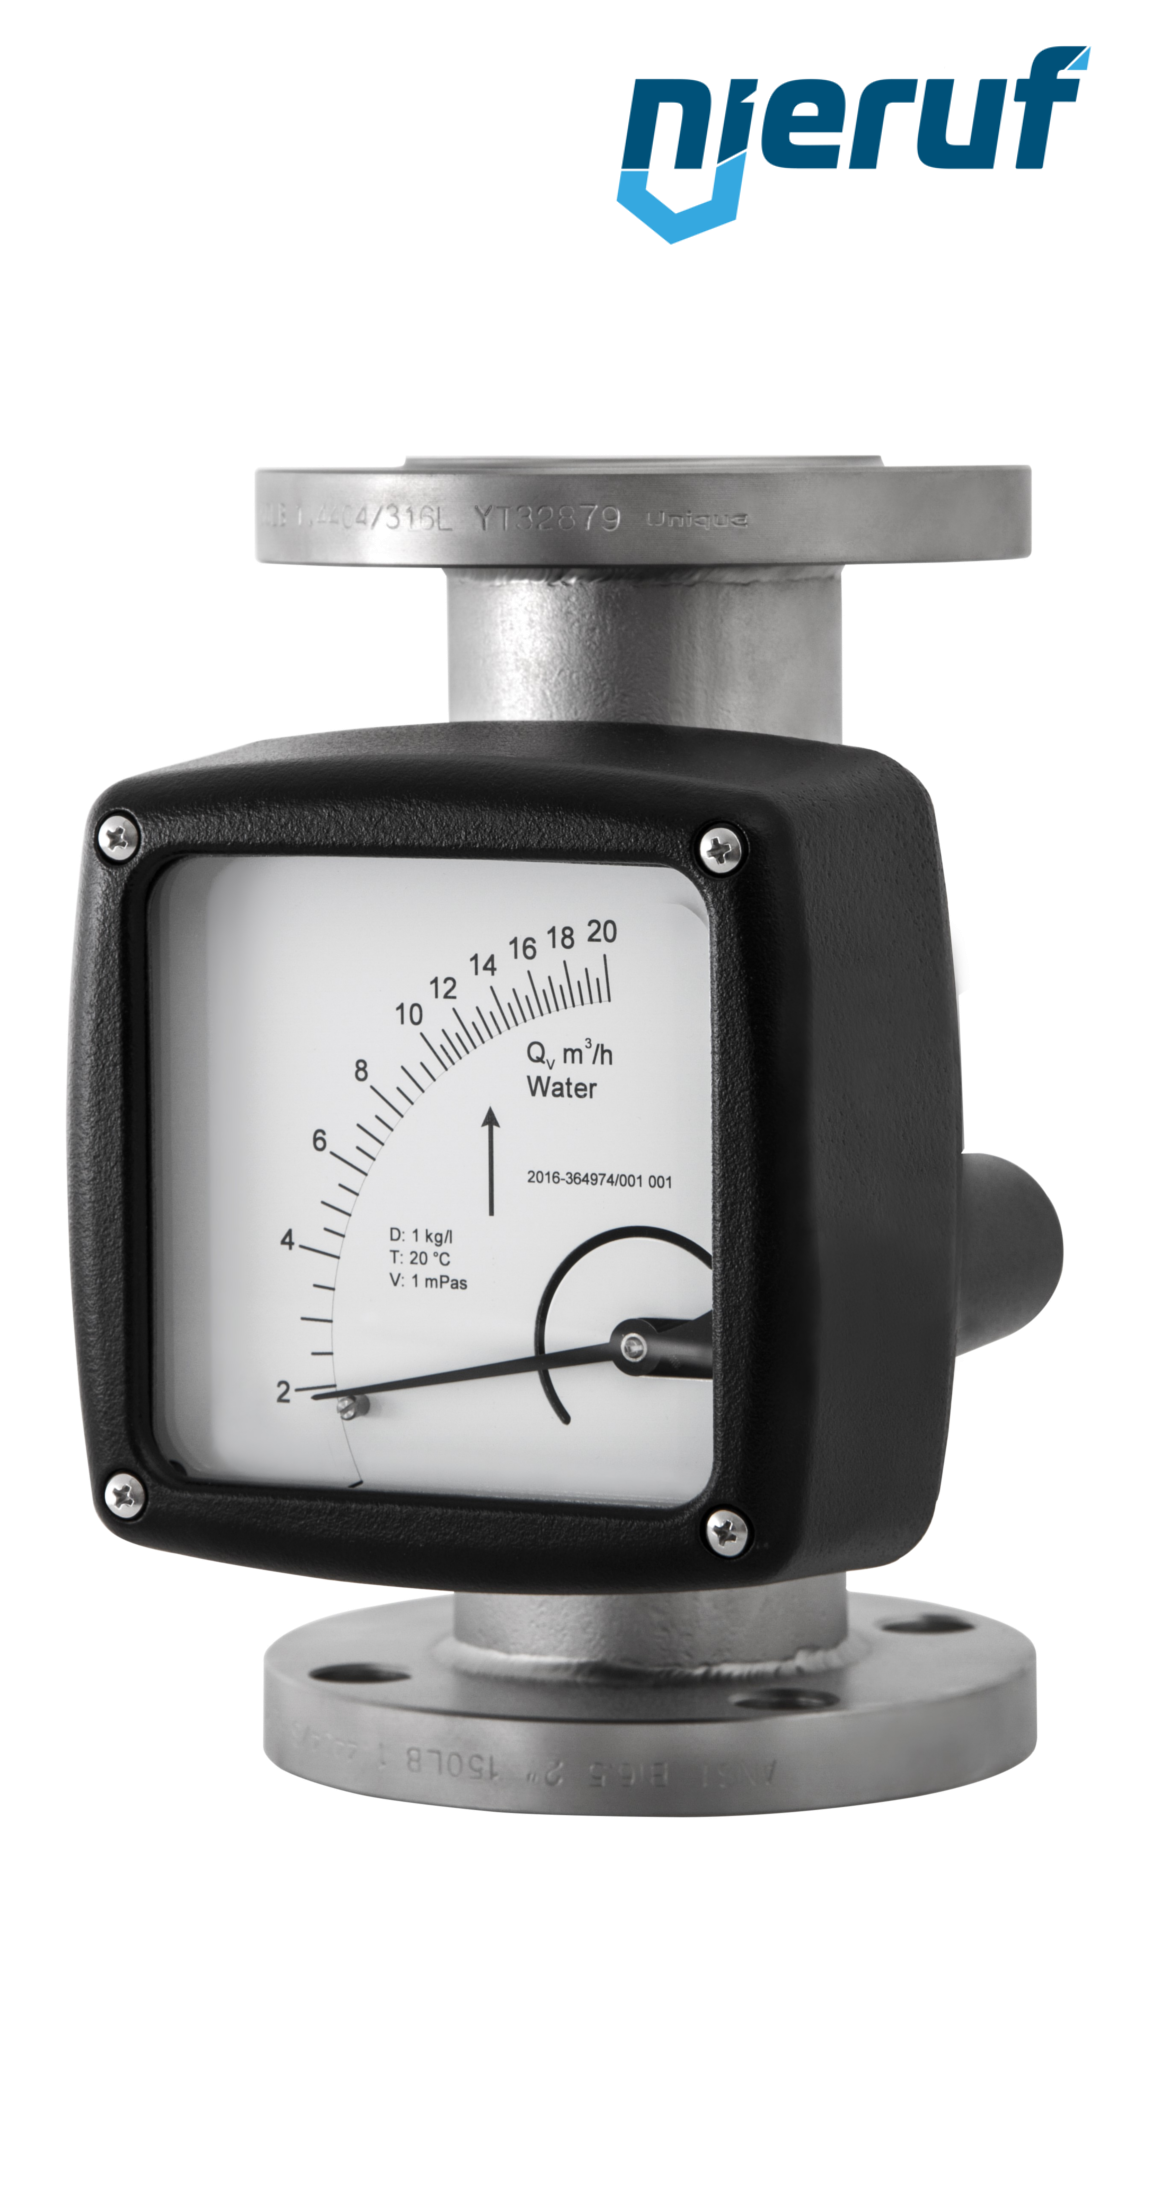 misuratore di flusso / rotametro completamente in metallo DN100-attacco 8000,0 - 80000,0 l/h tubo DN100 acqua